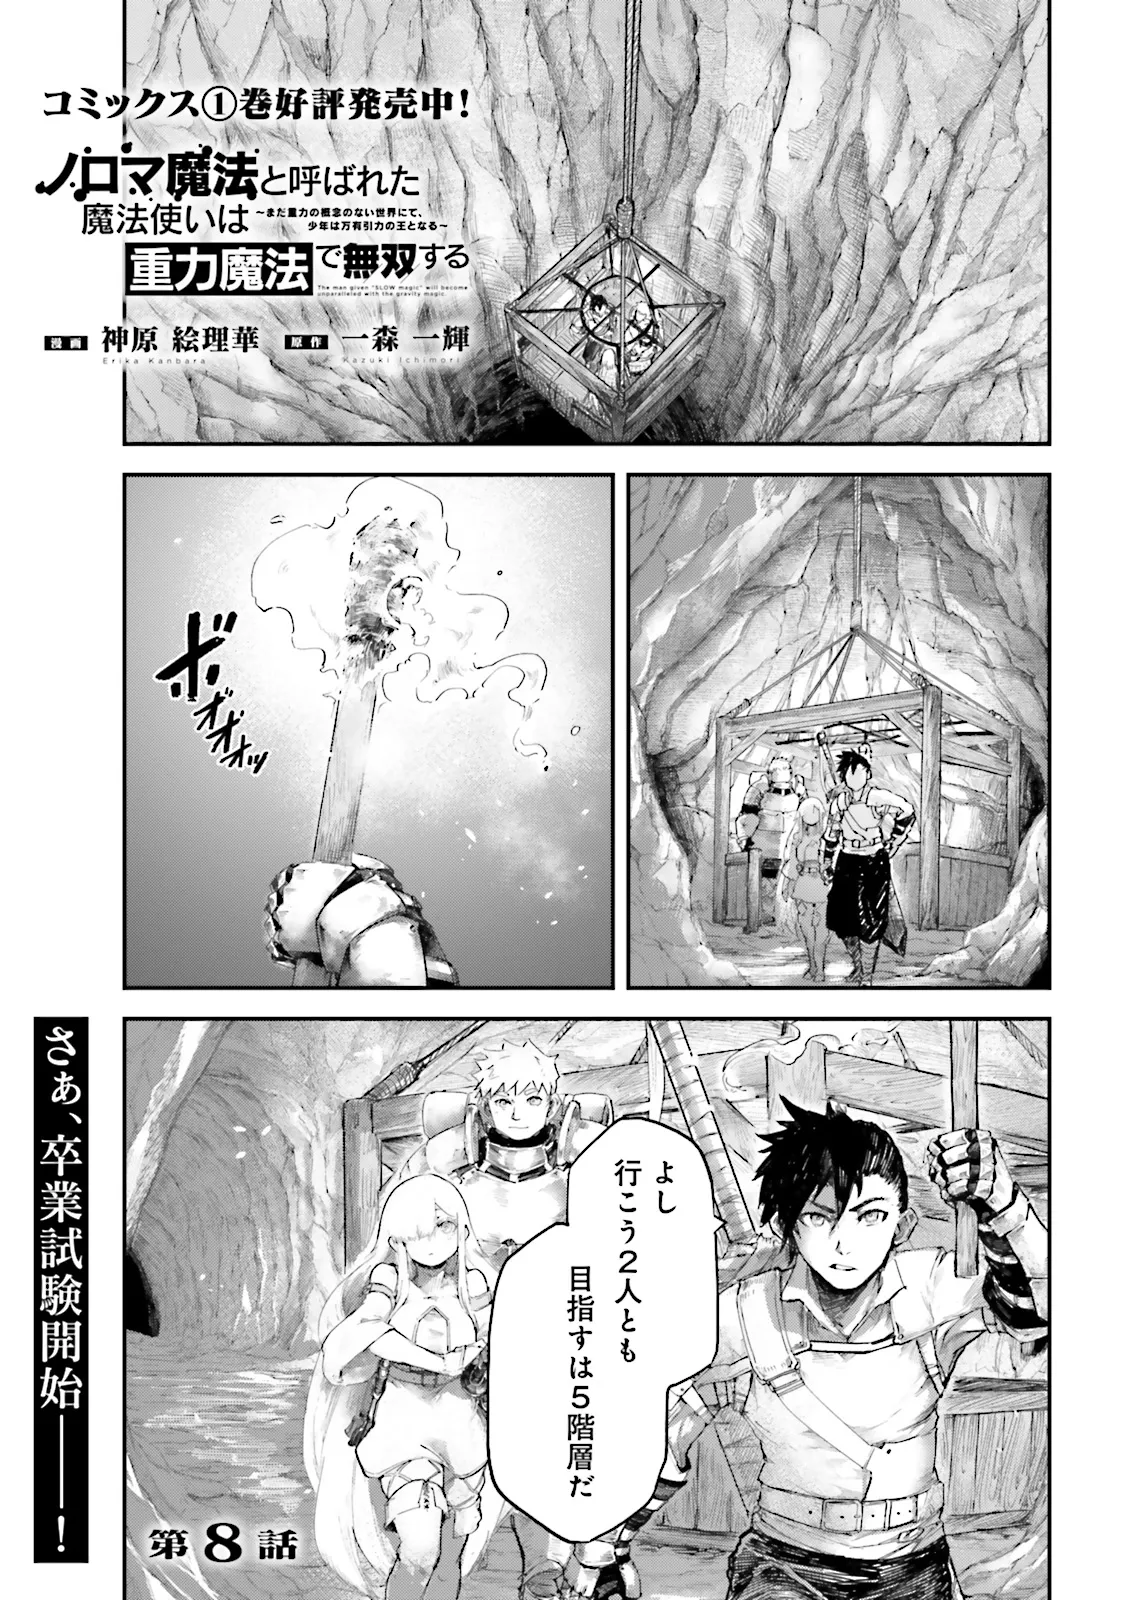 Noroma Mahou to Yobareta Mahoutsukai wa Juuryoku Mahou de Musou suru - Chapter 8.1 - Page 1